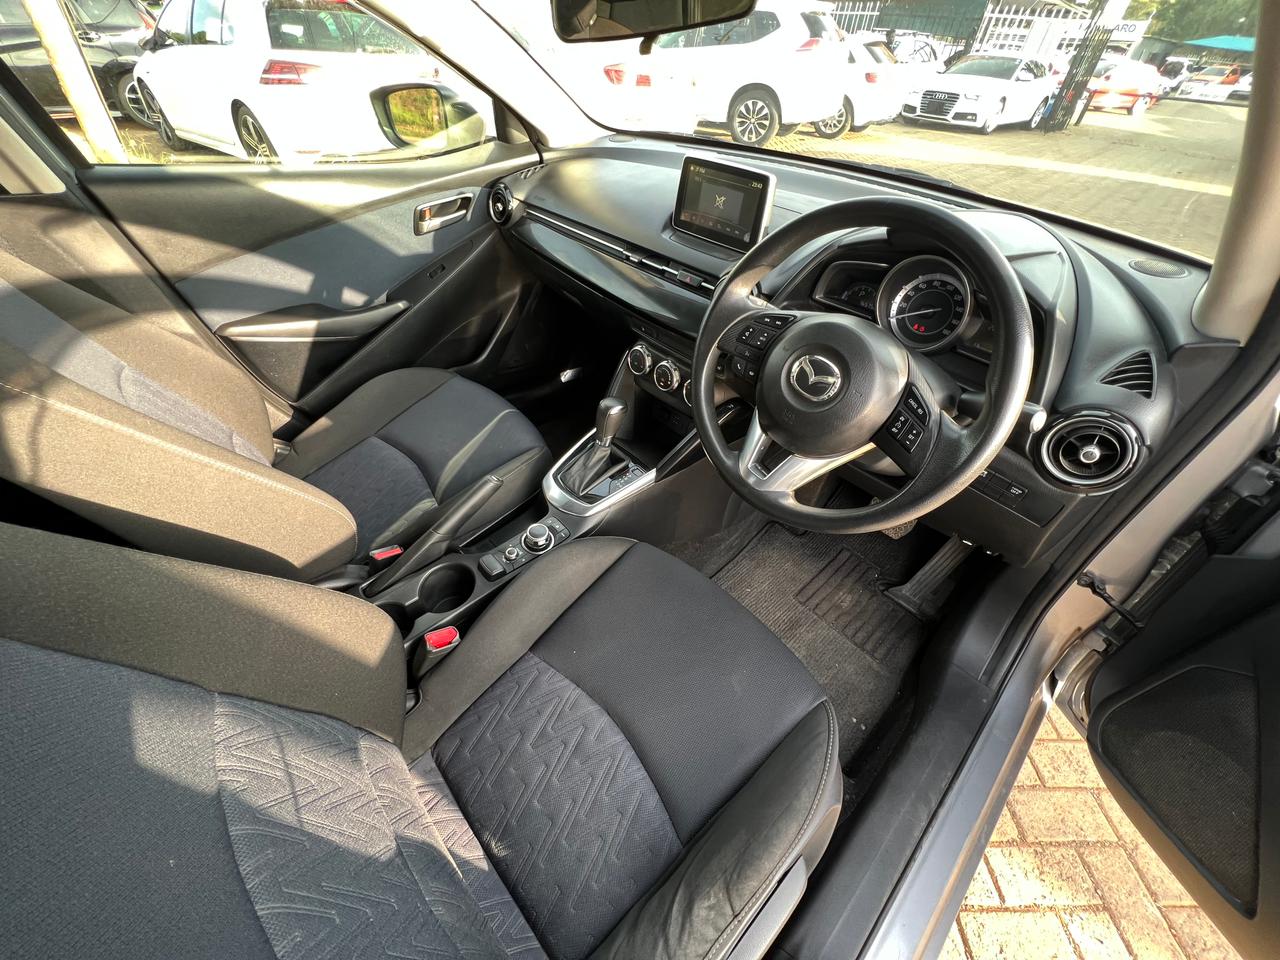 2016 Mazda2 SKYACTIV-D-1.5L - Engine